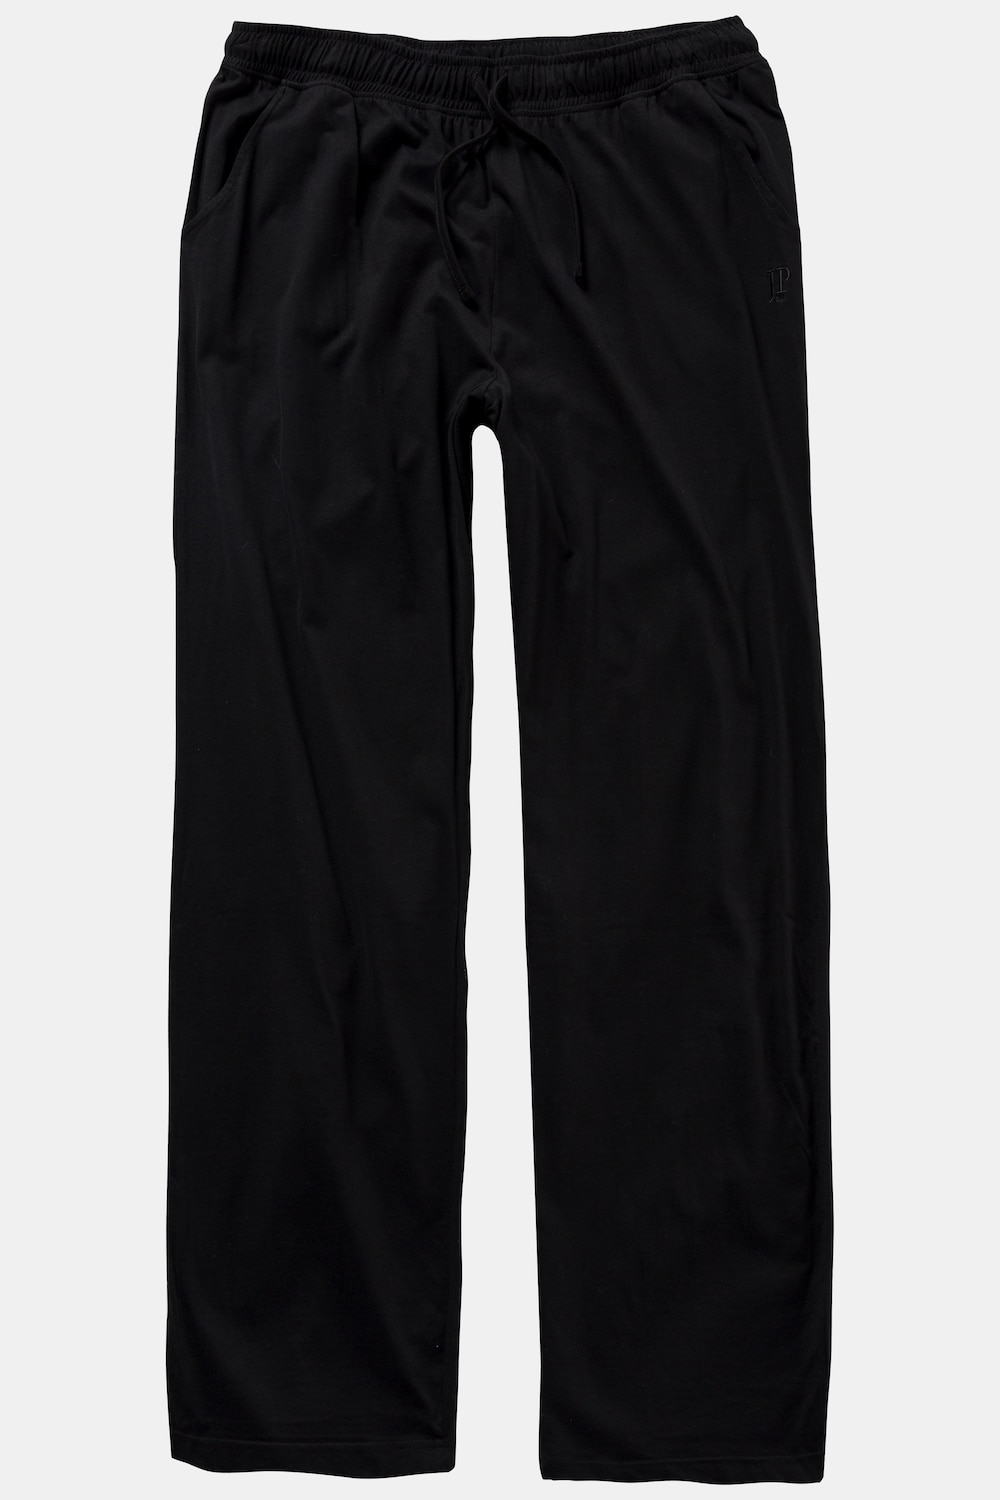 Grote Maten pyjamabroek, Heren, zwart, Maat: 7XL, Katoen, JP1880